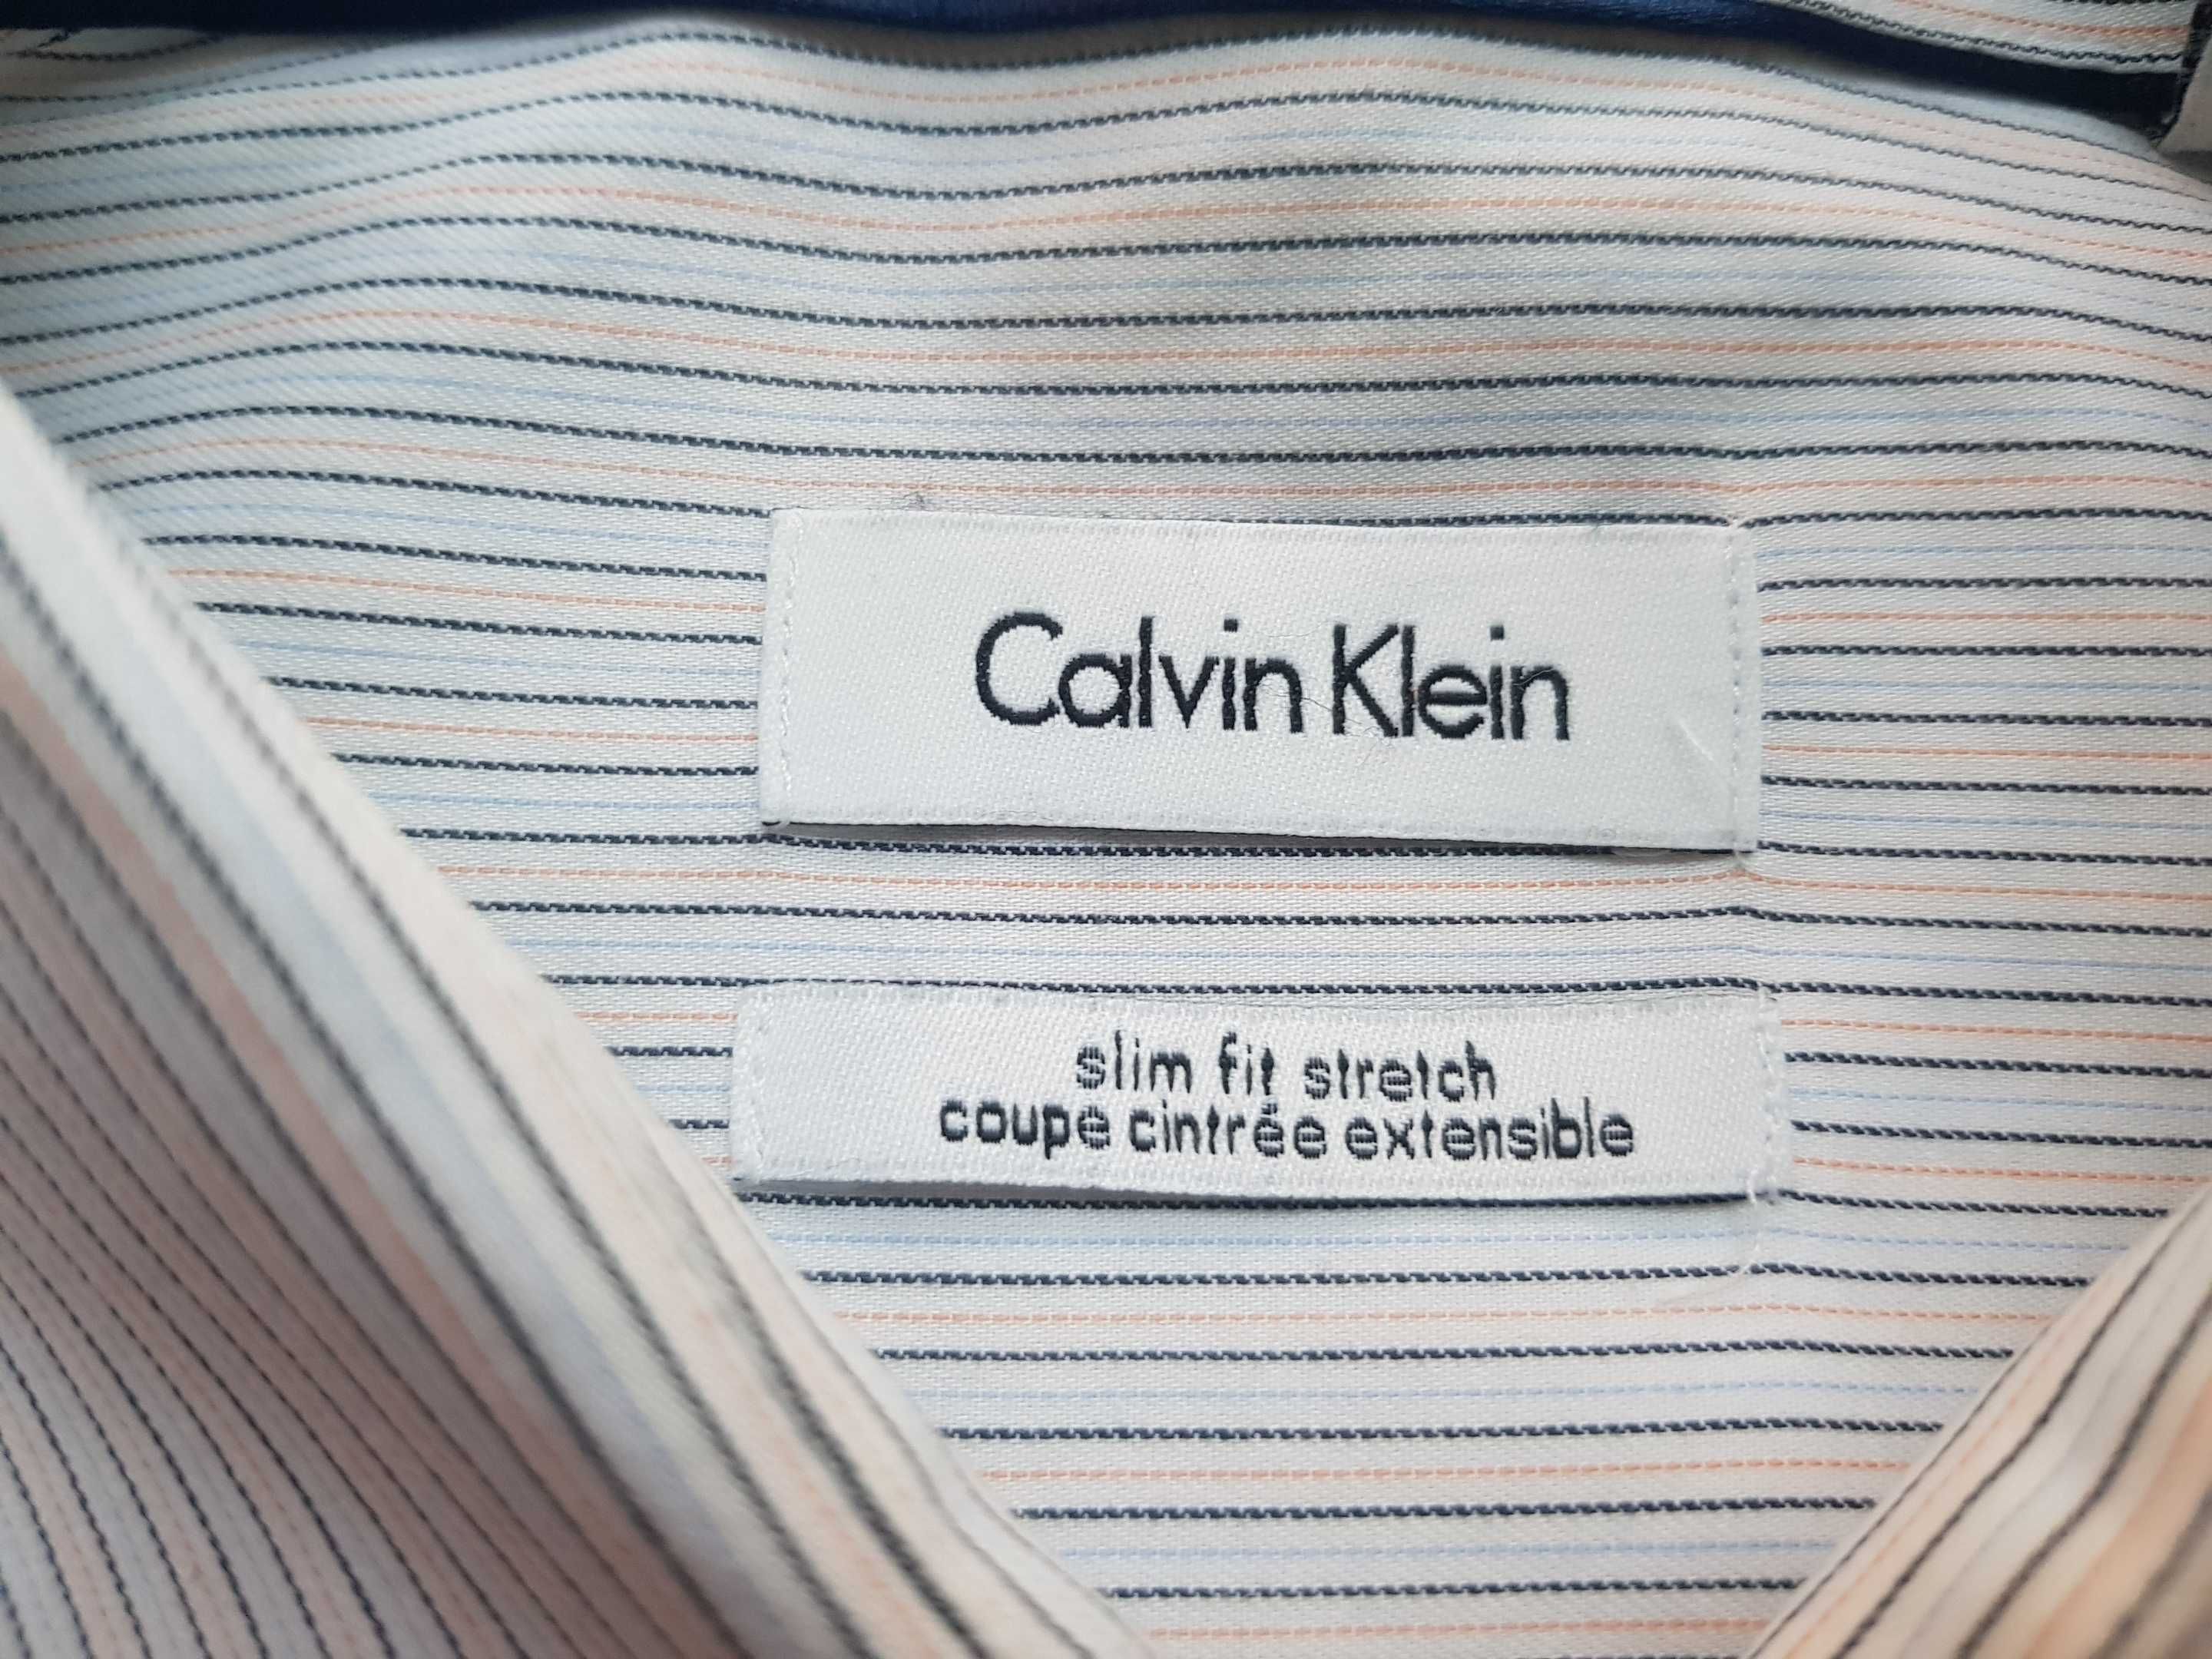 CALVIN KLEIN - koszula - rozmiar 40 / L